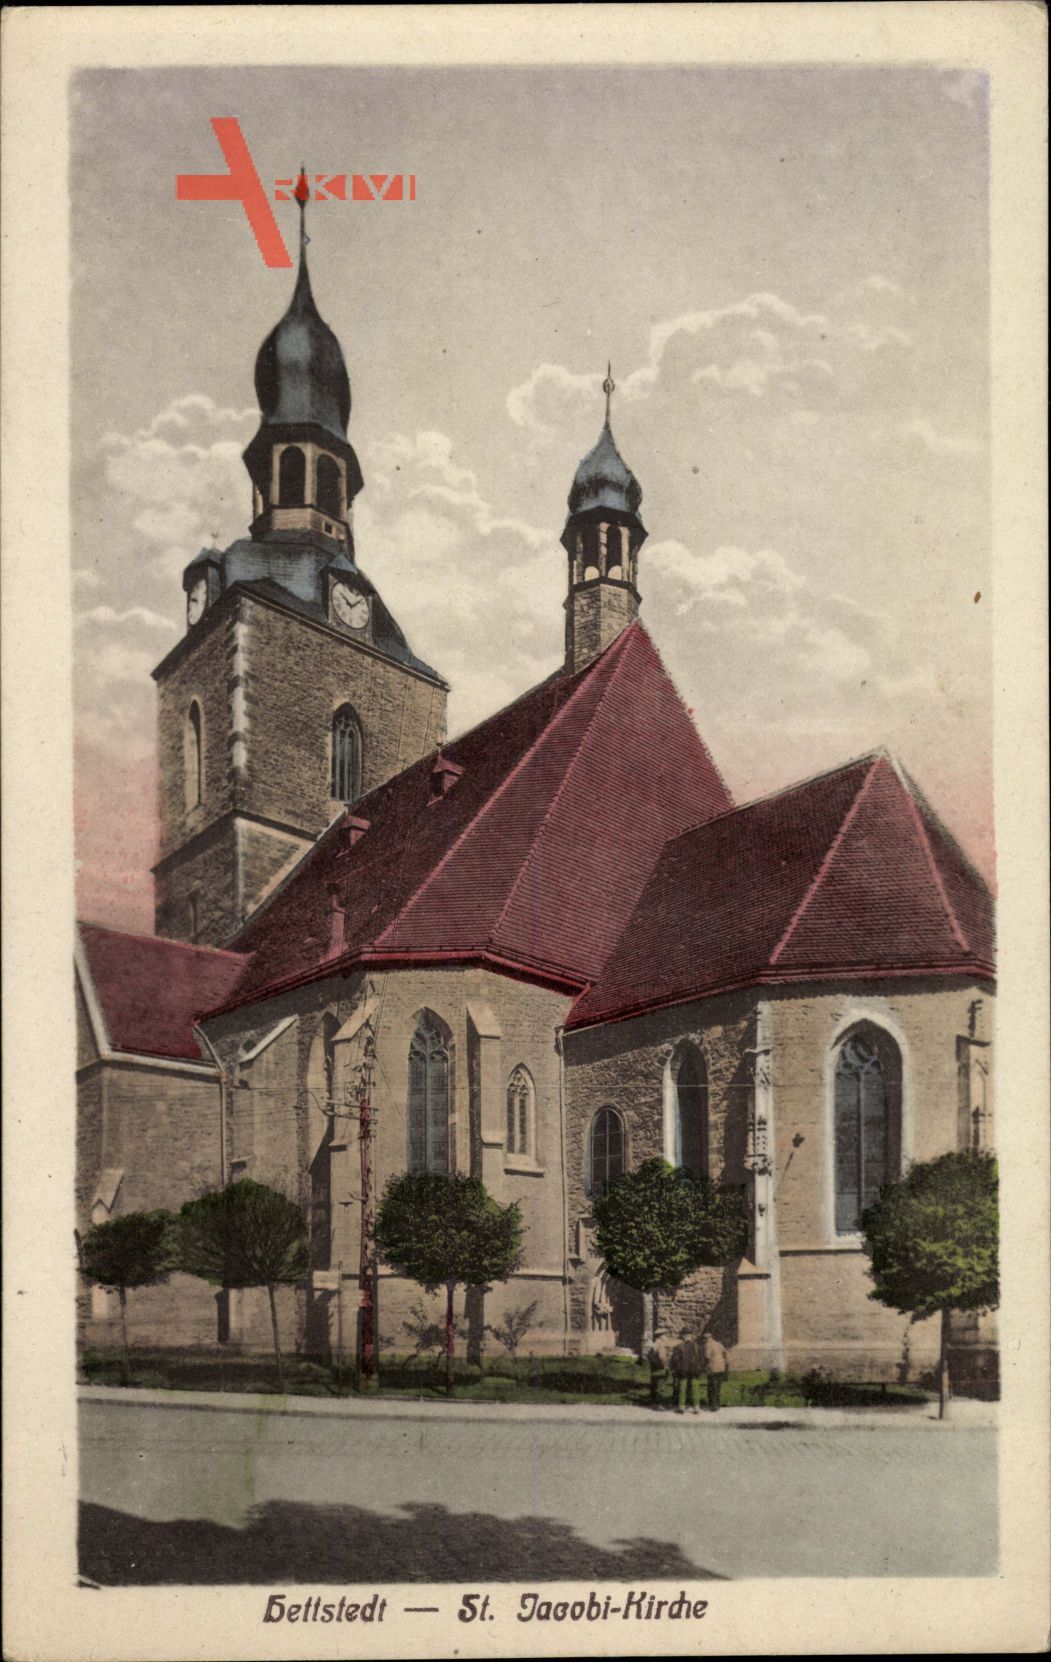 Hettstedt im Harzvorland Sachsen Anhalt, St. Jacobi Kirche